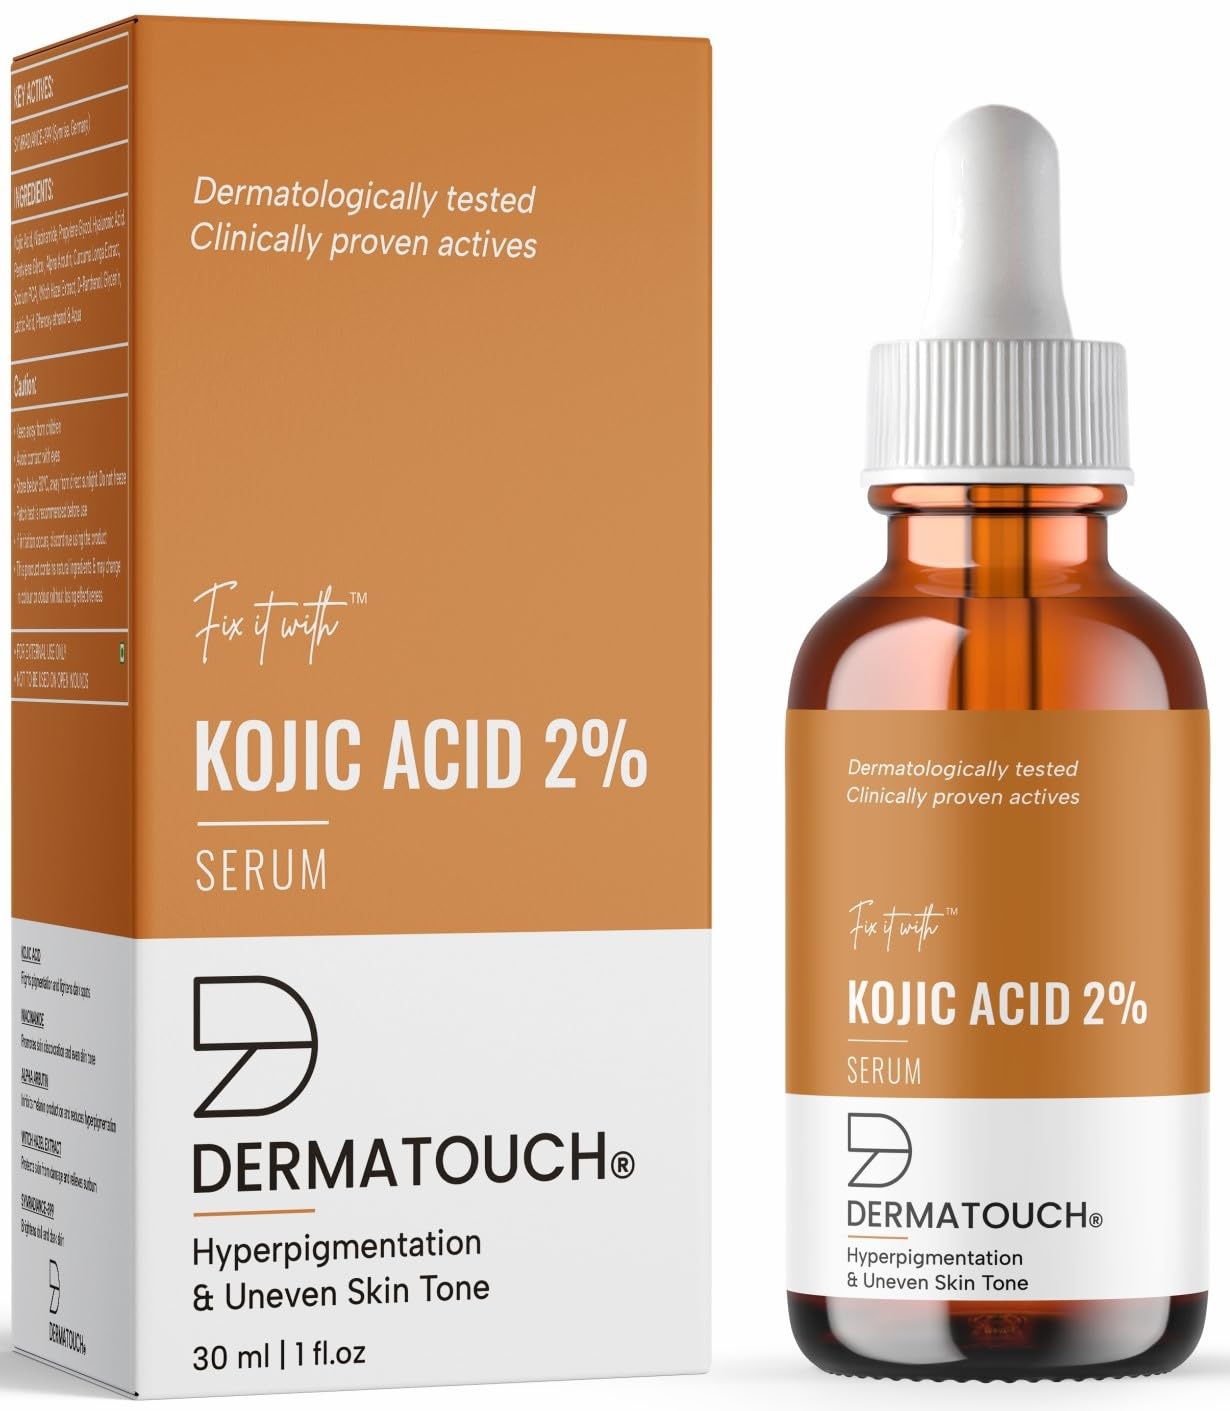 Dermatouch Kojic Acid 2% Serum